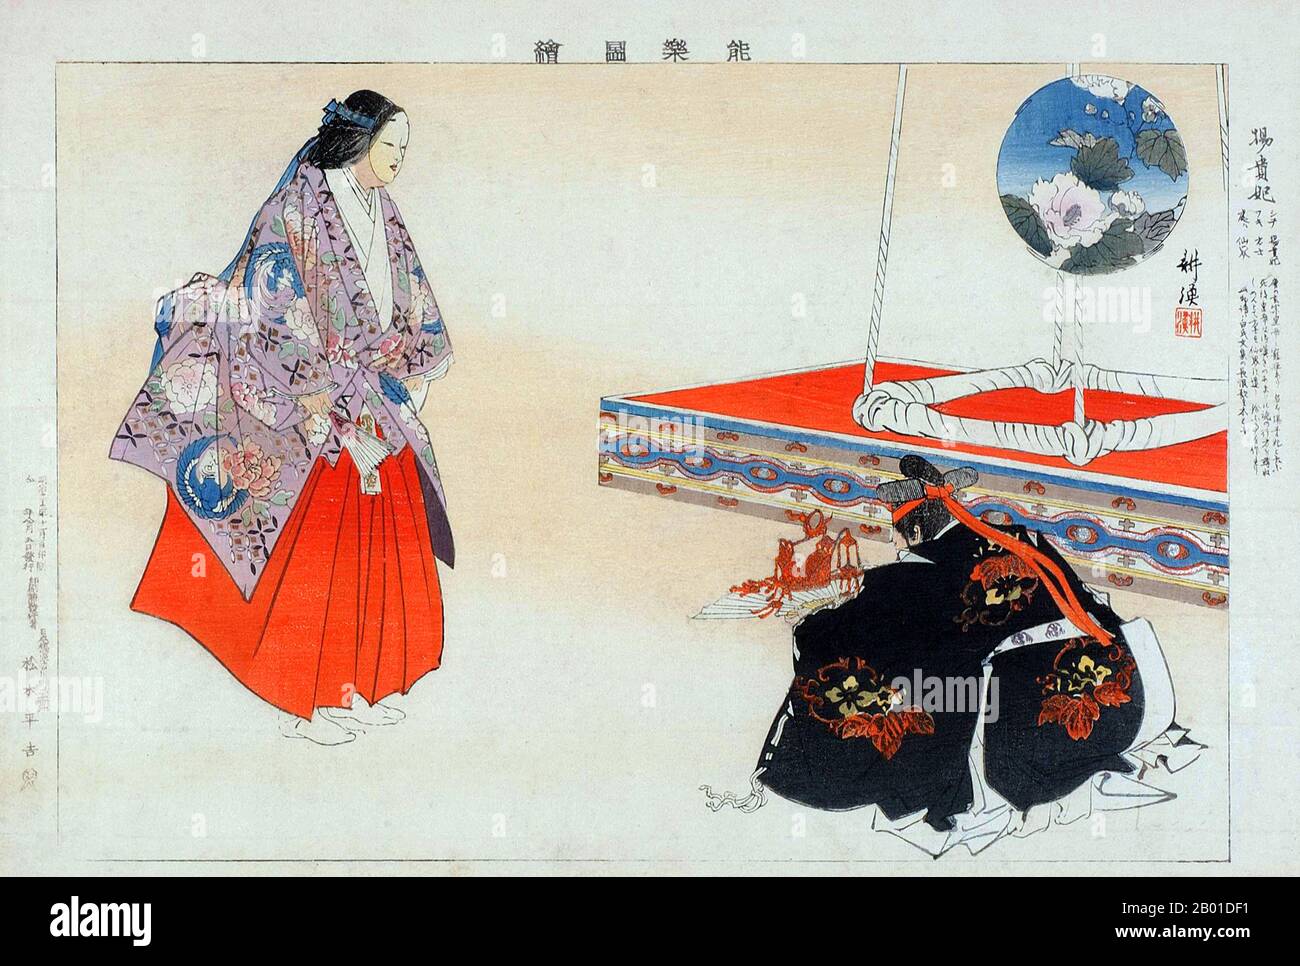 Japan: "Yôkihi". Ukiyo-e Holzblockdruck aus der Serie „Nogaku zue“ (Bilder ohne Theater) von Kōgyo Tsukioka (1869-1927), 1897. Ein japanisches Gemälde von Yang Gueifei, das in Japan als Yokihi gefeiert wird. Die Gemahlin Yang Yuhuan (1. Juni 719 - 15. Juli 756), oft bekannt als Yang Guifei (Guifei ist der höchste Rang für kaiserliche Konsortien zu ihrer Zeit), kurz bekannt unter dem Namen Taizhen, ist berühmt als eine der vier Schönheiten des antiken Chinas. Sie war die geliebte Gemahlin des Kaisers Xuanzong von Tang in seinen späteren Jahren. Stockfoto